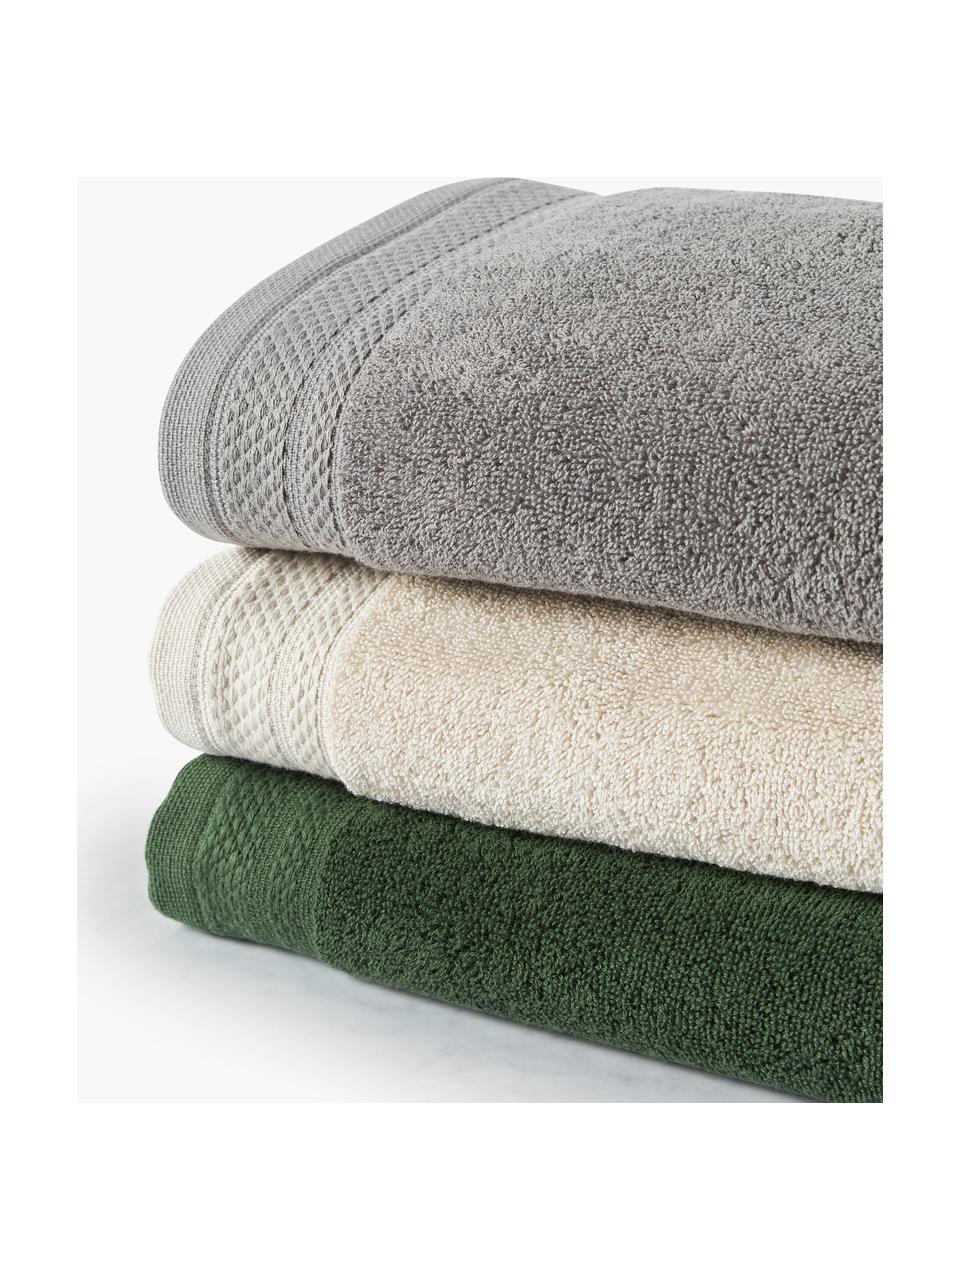 Sada ručníků z organické bavlny Premium, různé velikosti, 100 % bio bavlna, s certifikátem GOTS (certifikováno GCL International, GCL-300517)
Vysoká gramáž, 600 g/m², Tmavě šedá, 4dílná sada (ručník a osuška)